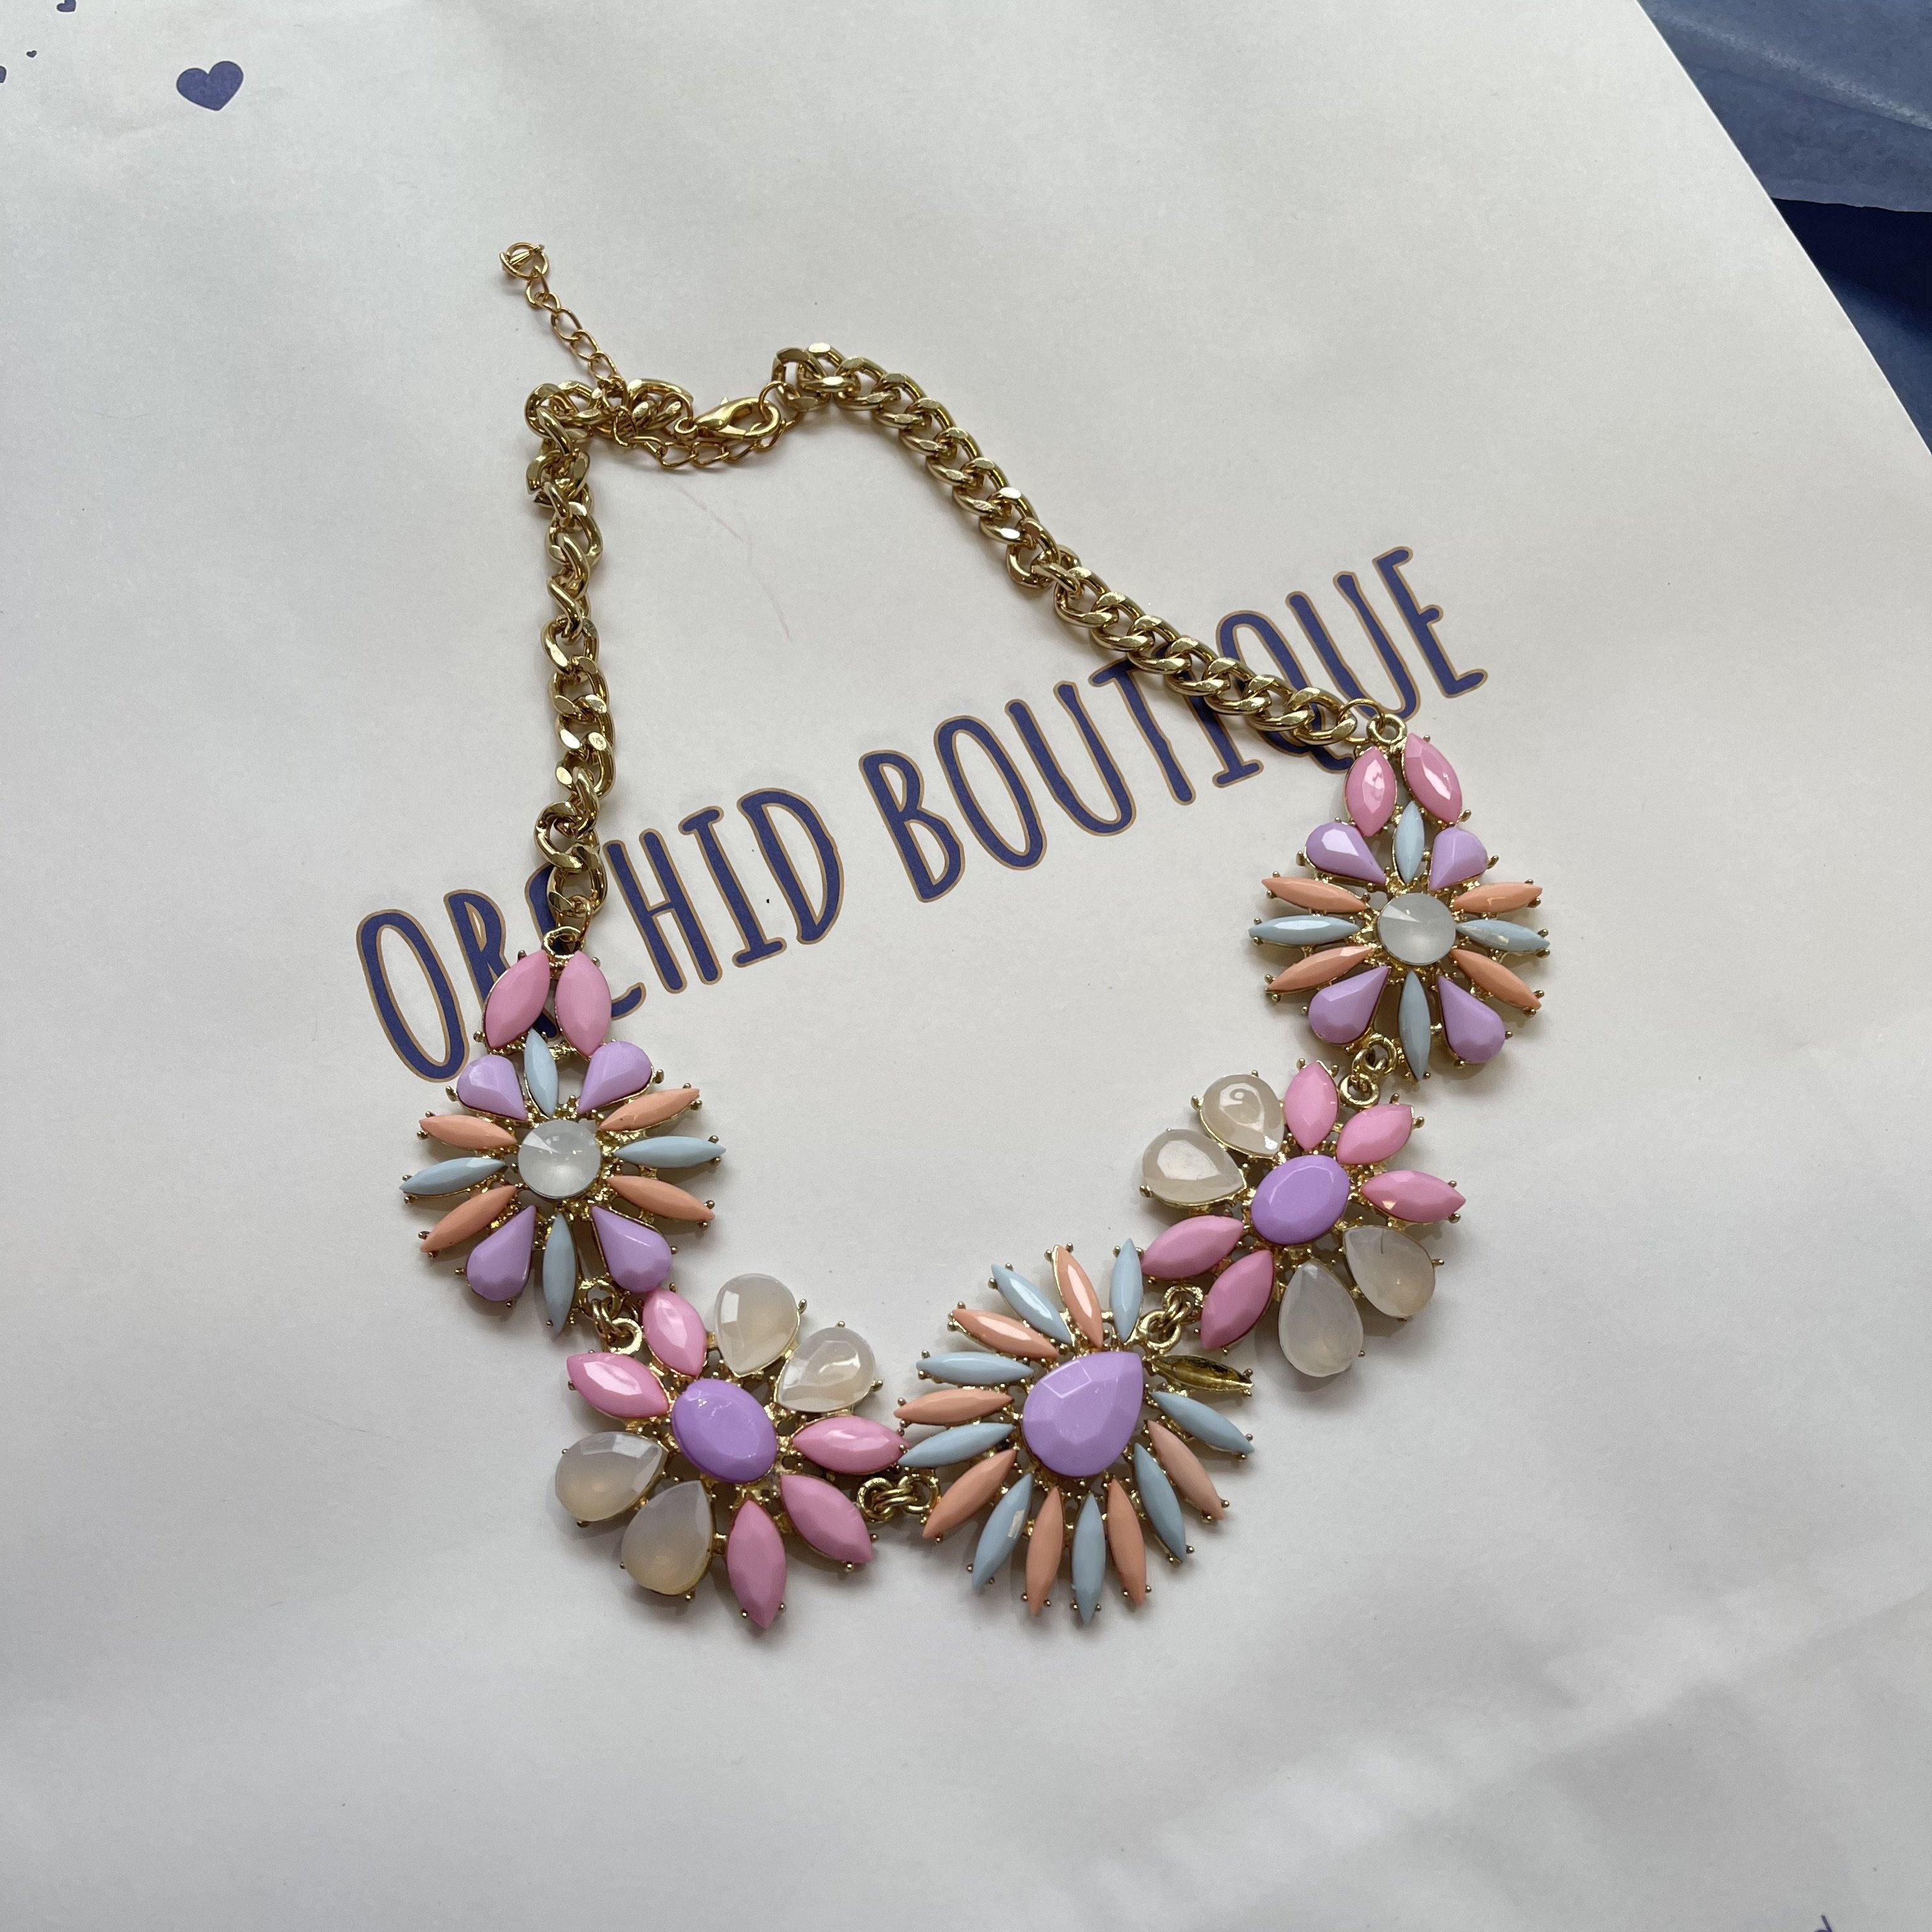 Floral Design Necklace | Orchid Boutique | Orchid Boutique